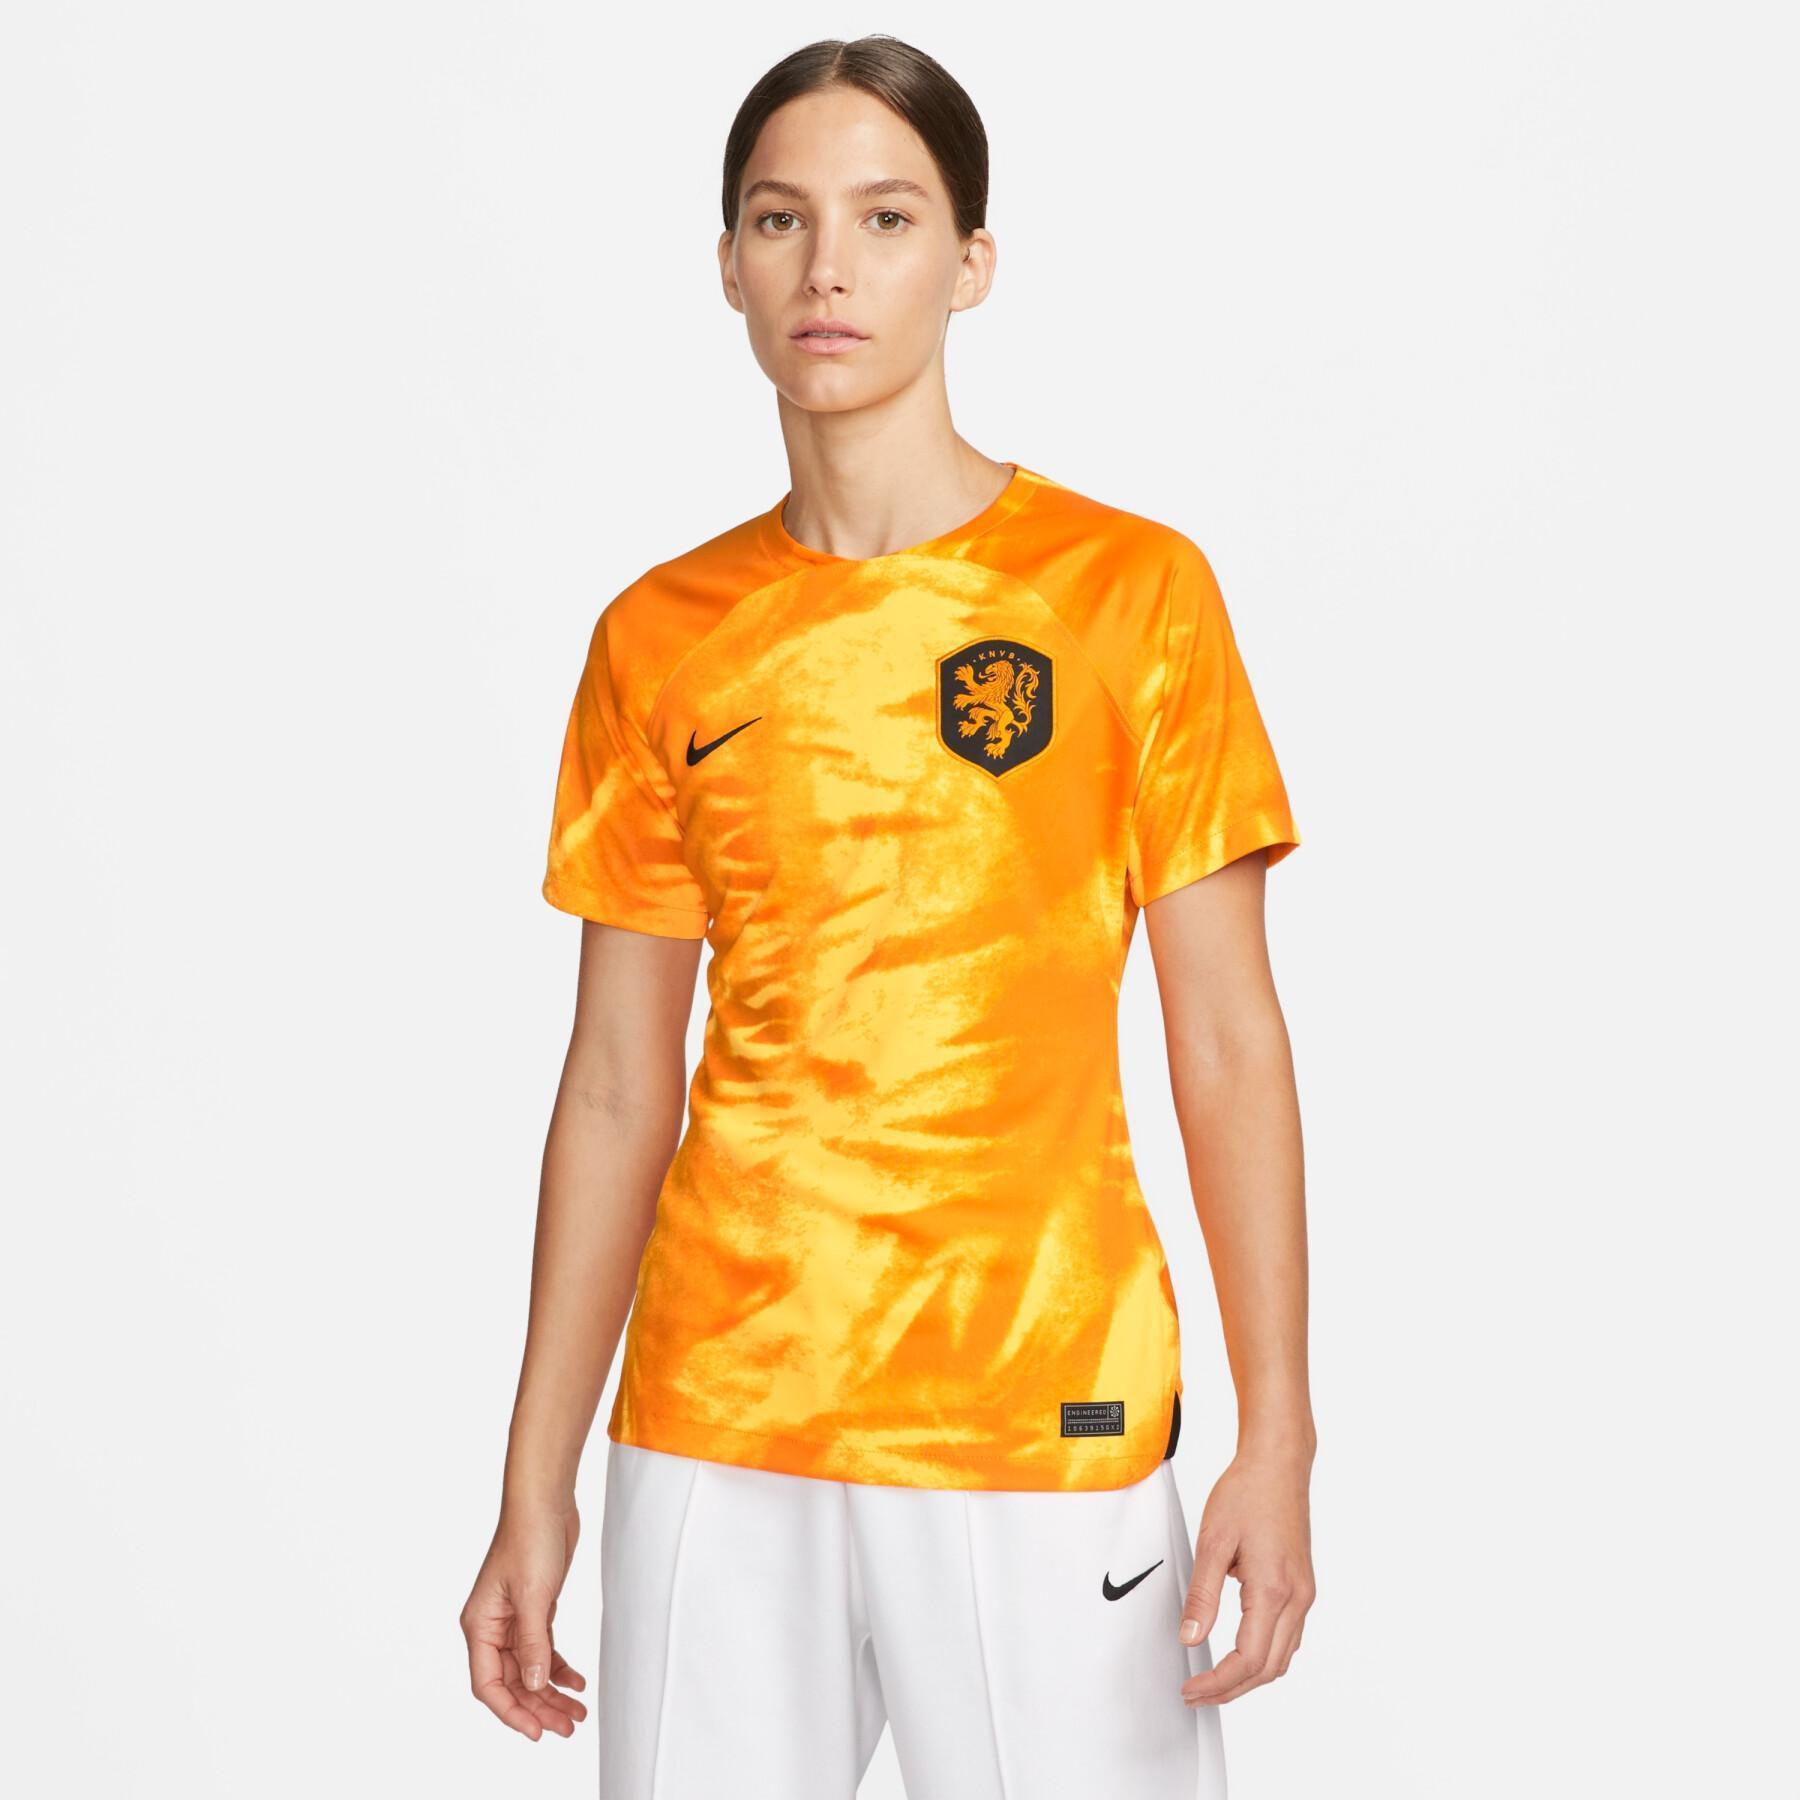 Camiseta local de mujer para la Copa Mundial 2022 Pays-Bas